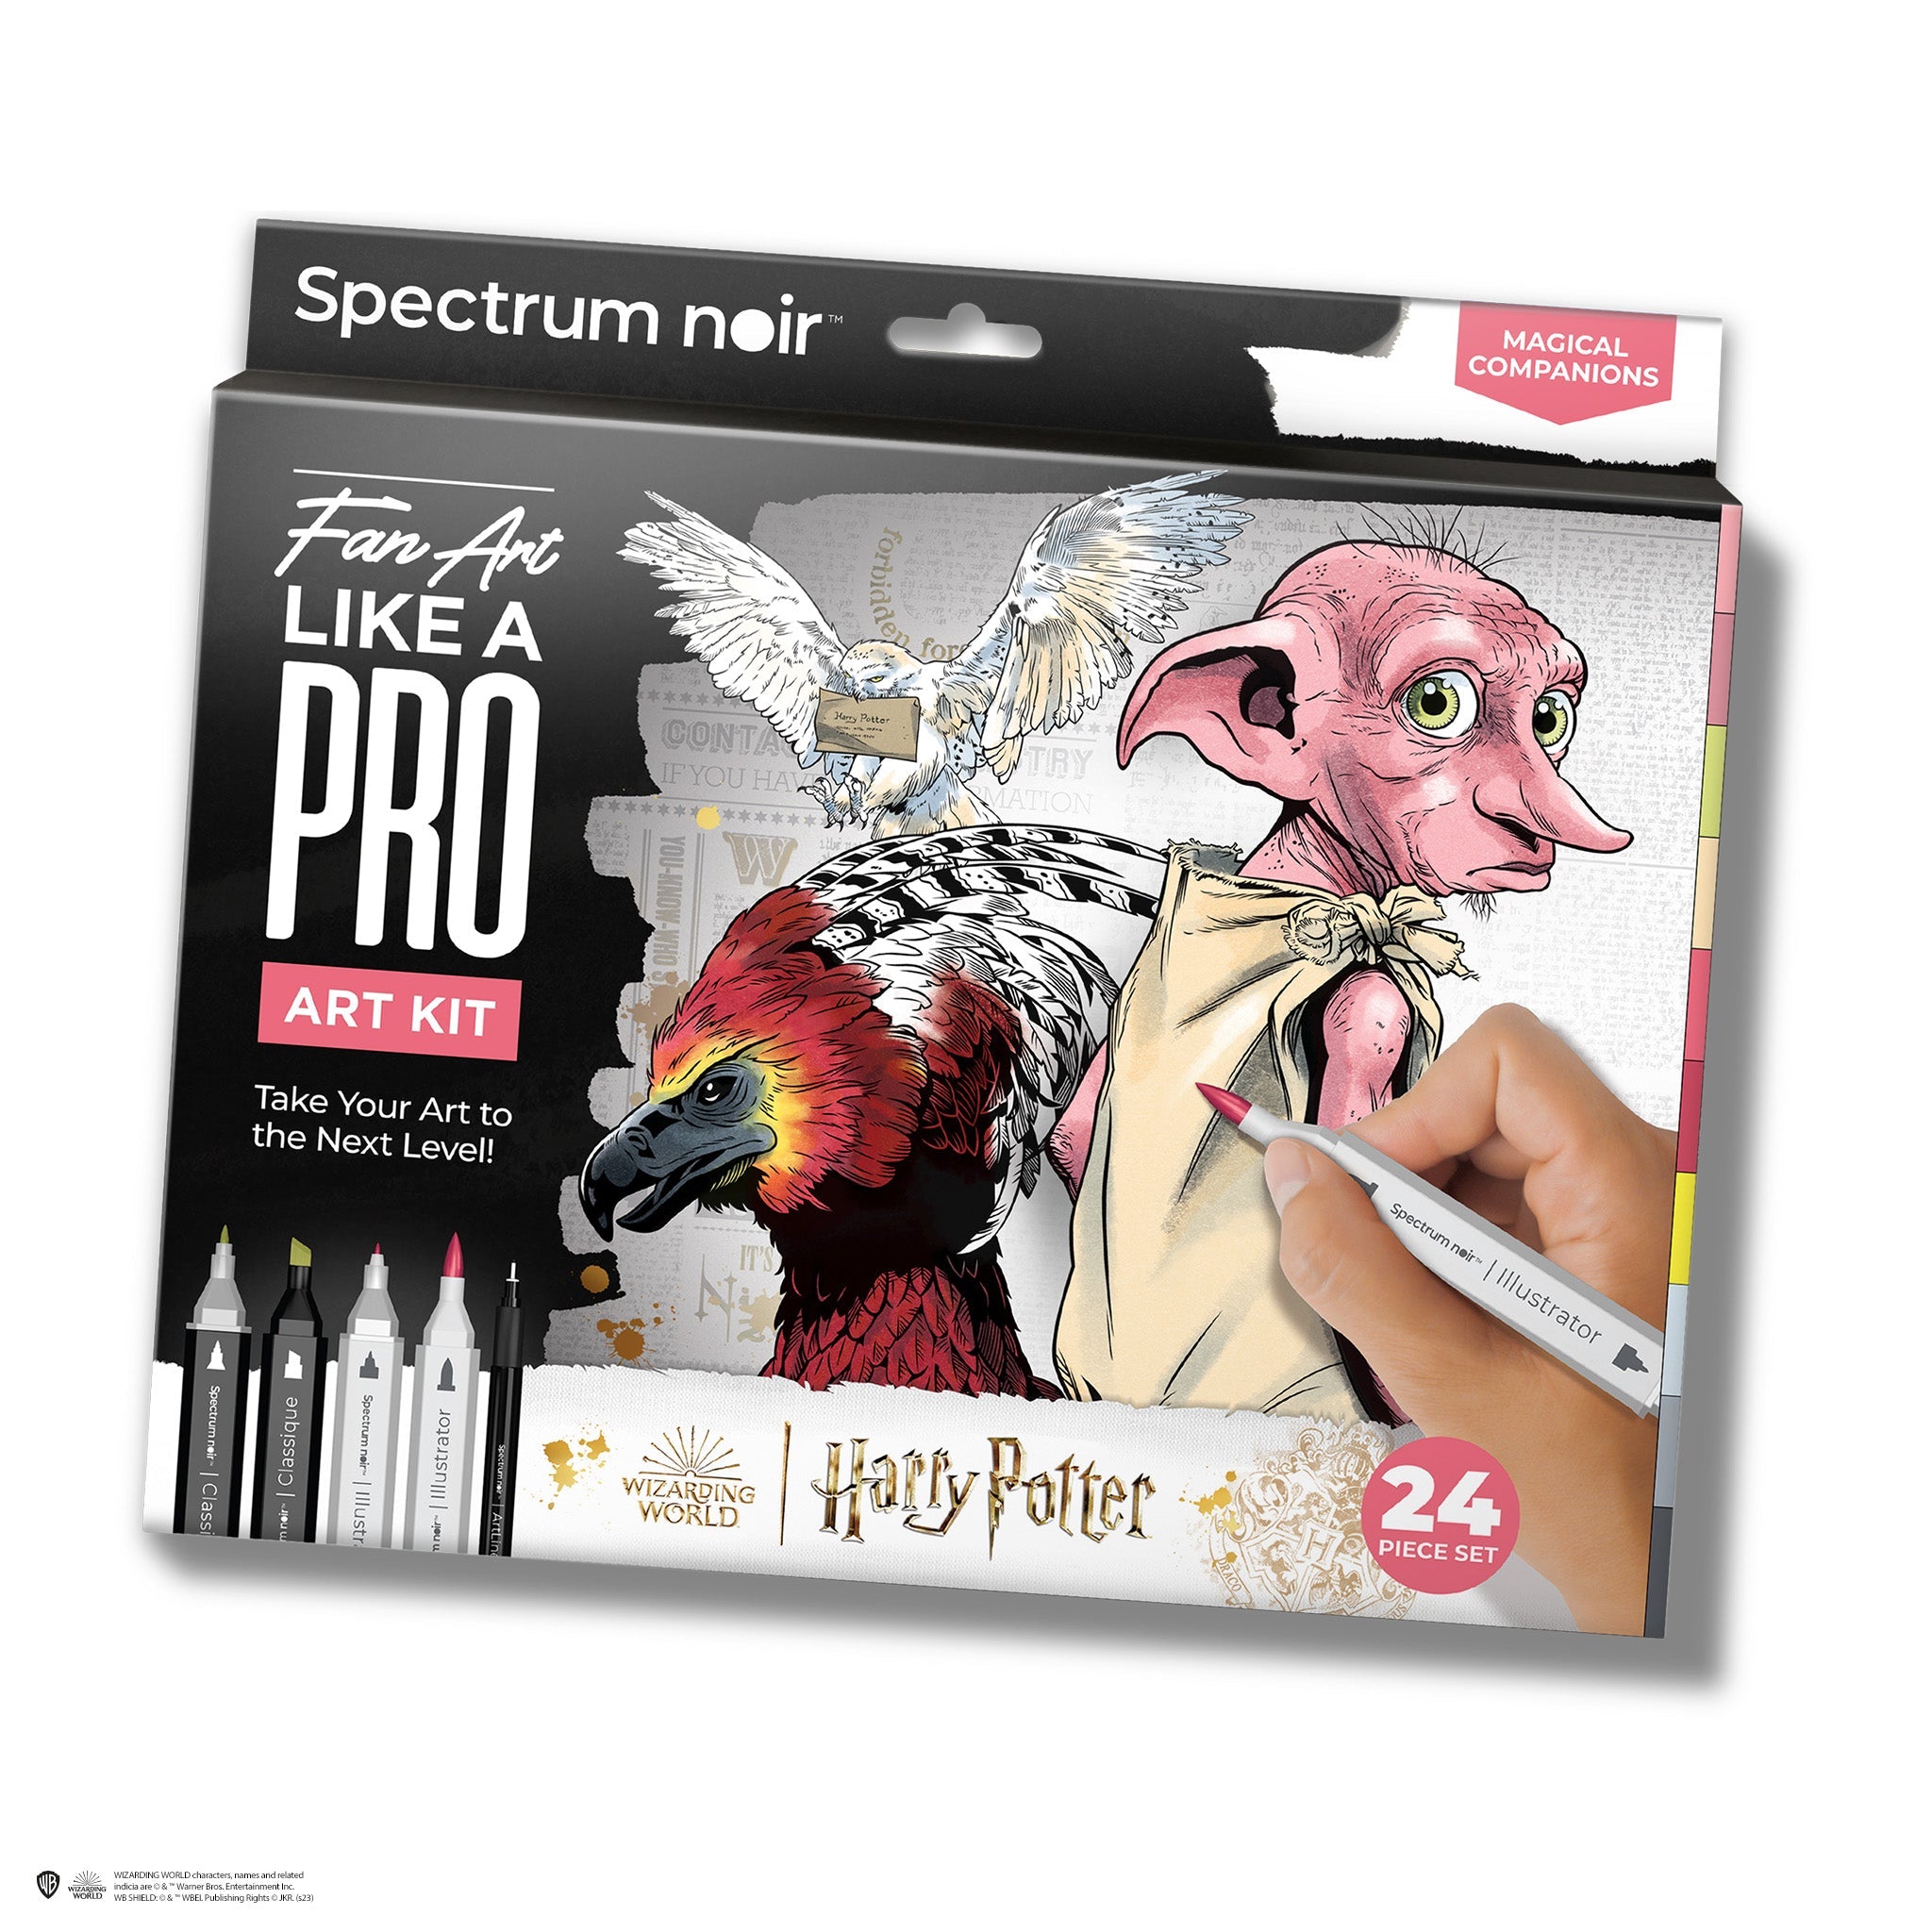 Introducing Harry Potter Fan-Art Like a Pro Art Kits! - Spectrum Noir 